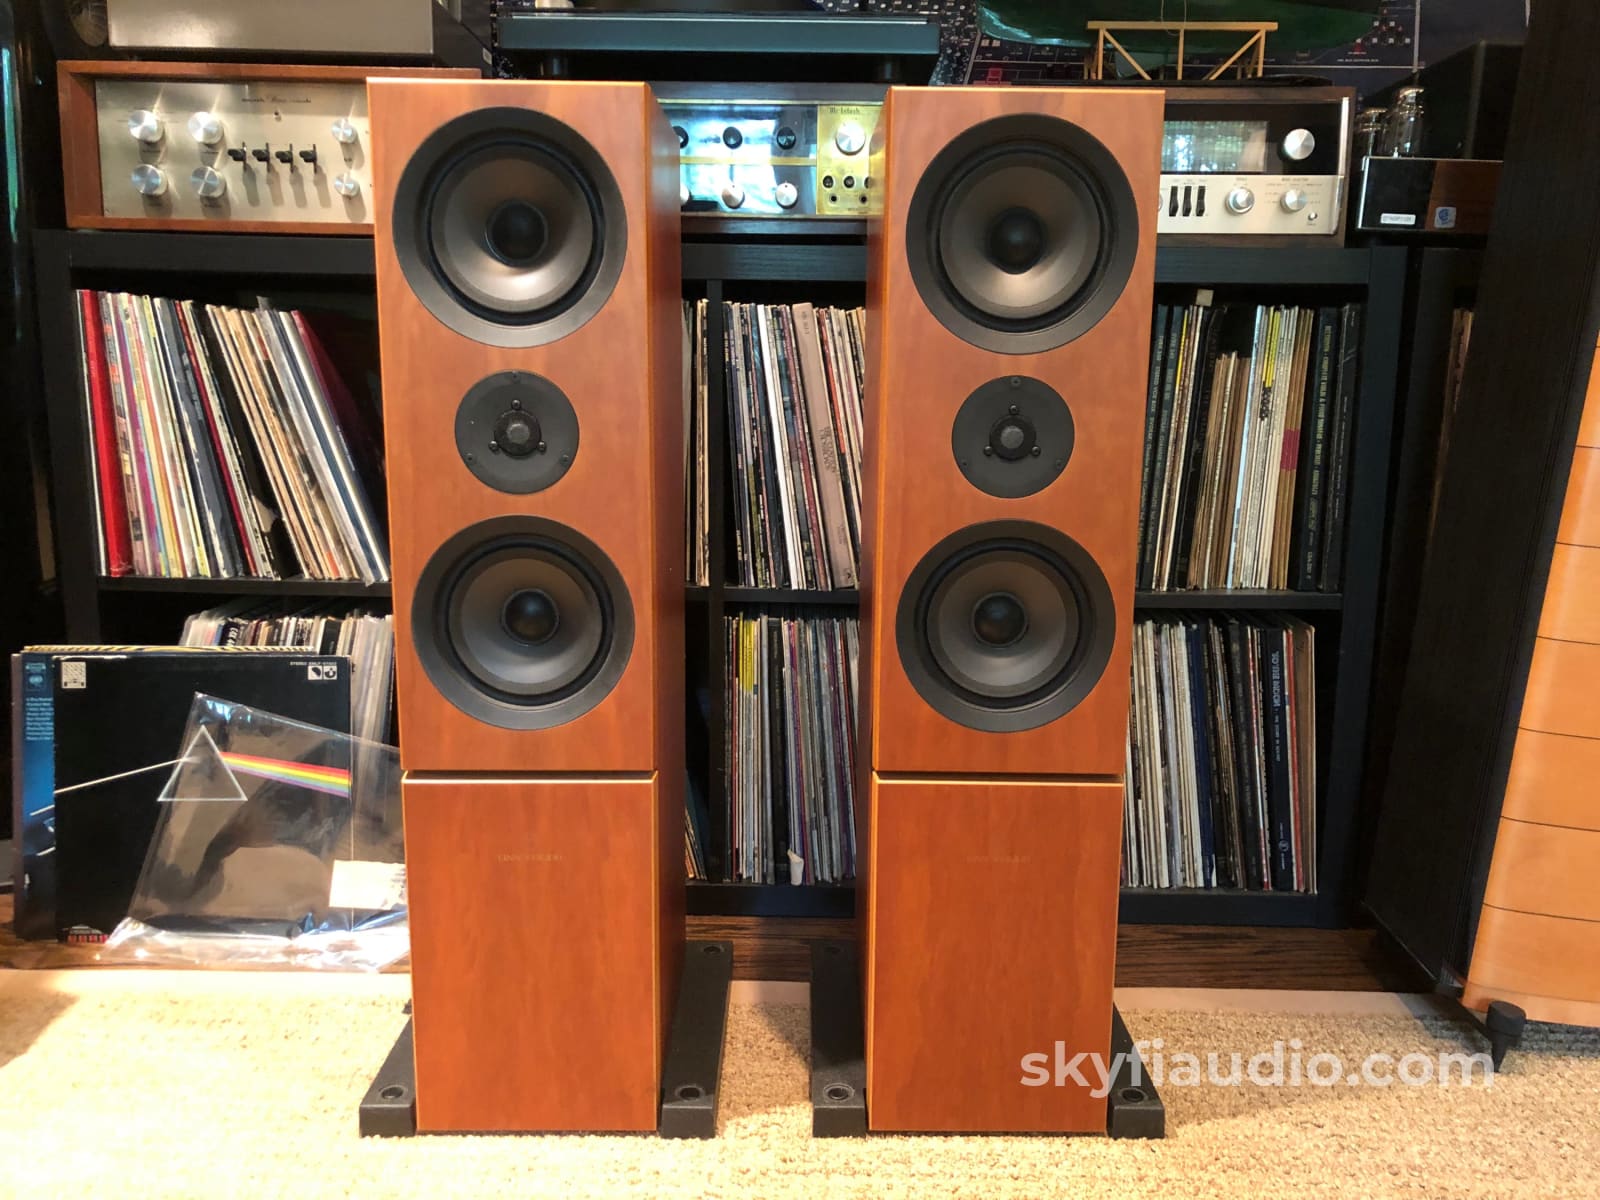 Linn 5 Speaker Surround System - Keilidh Tukan And Av5120 In Cherry Speakers